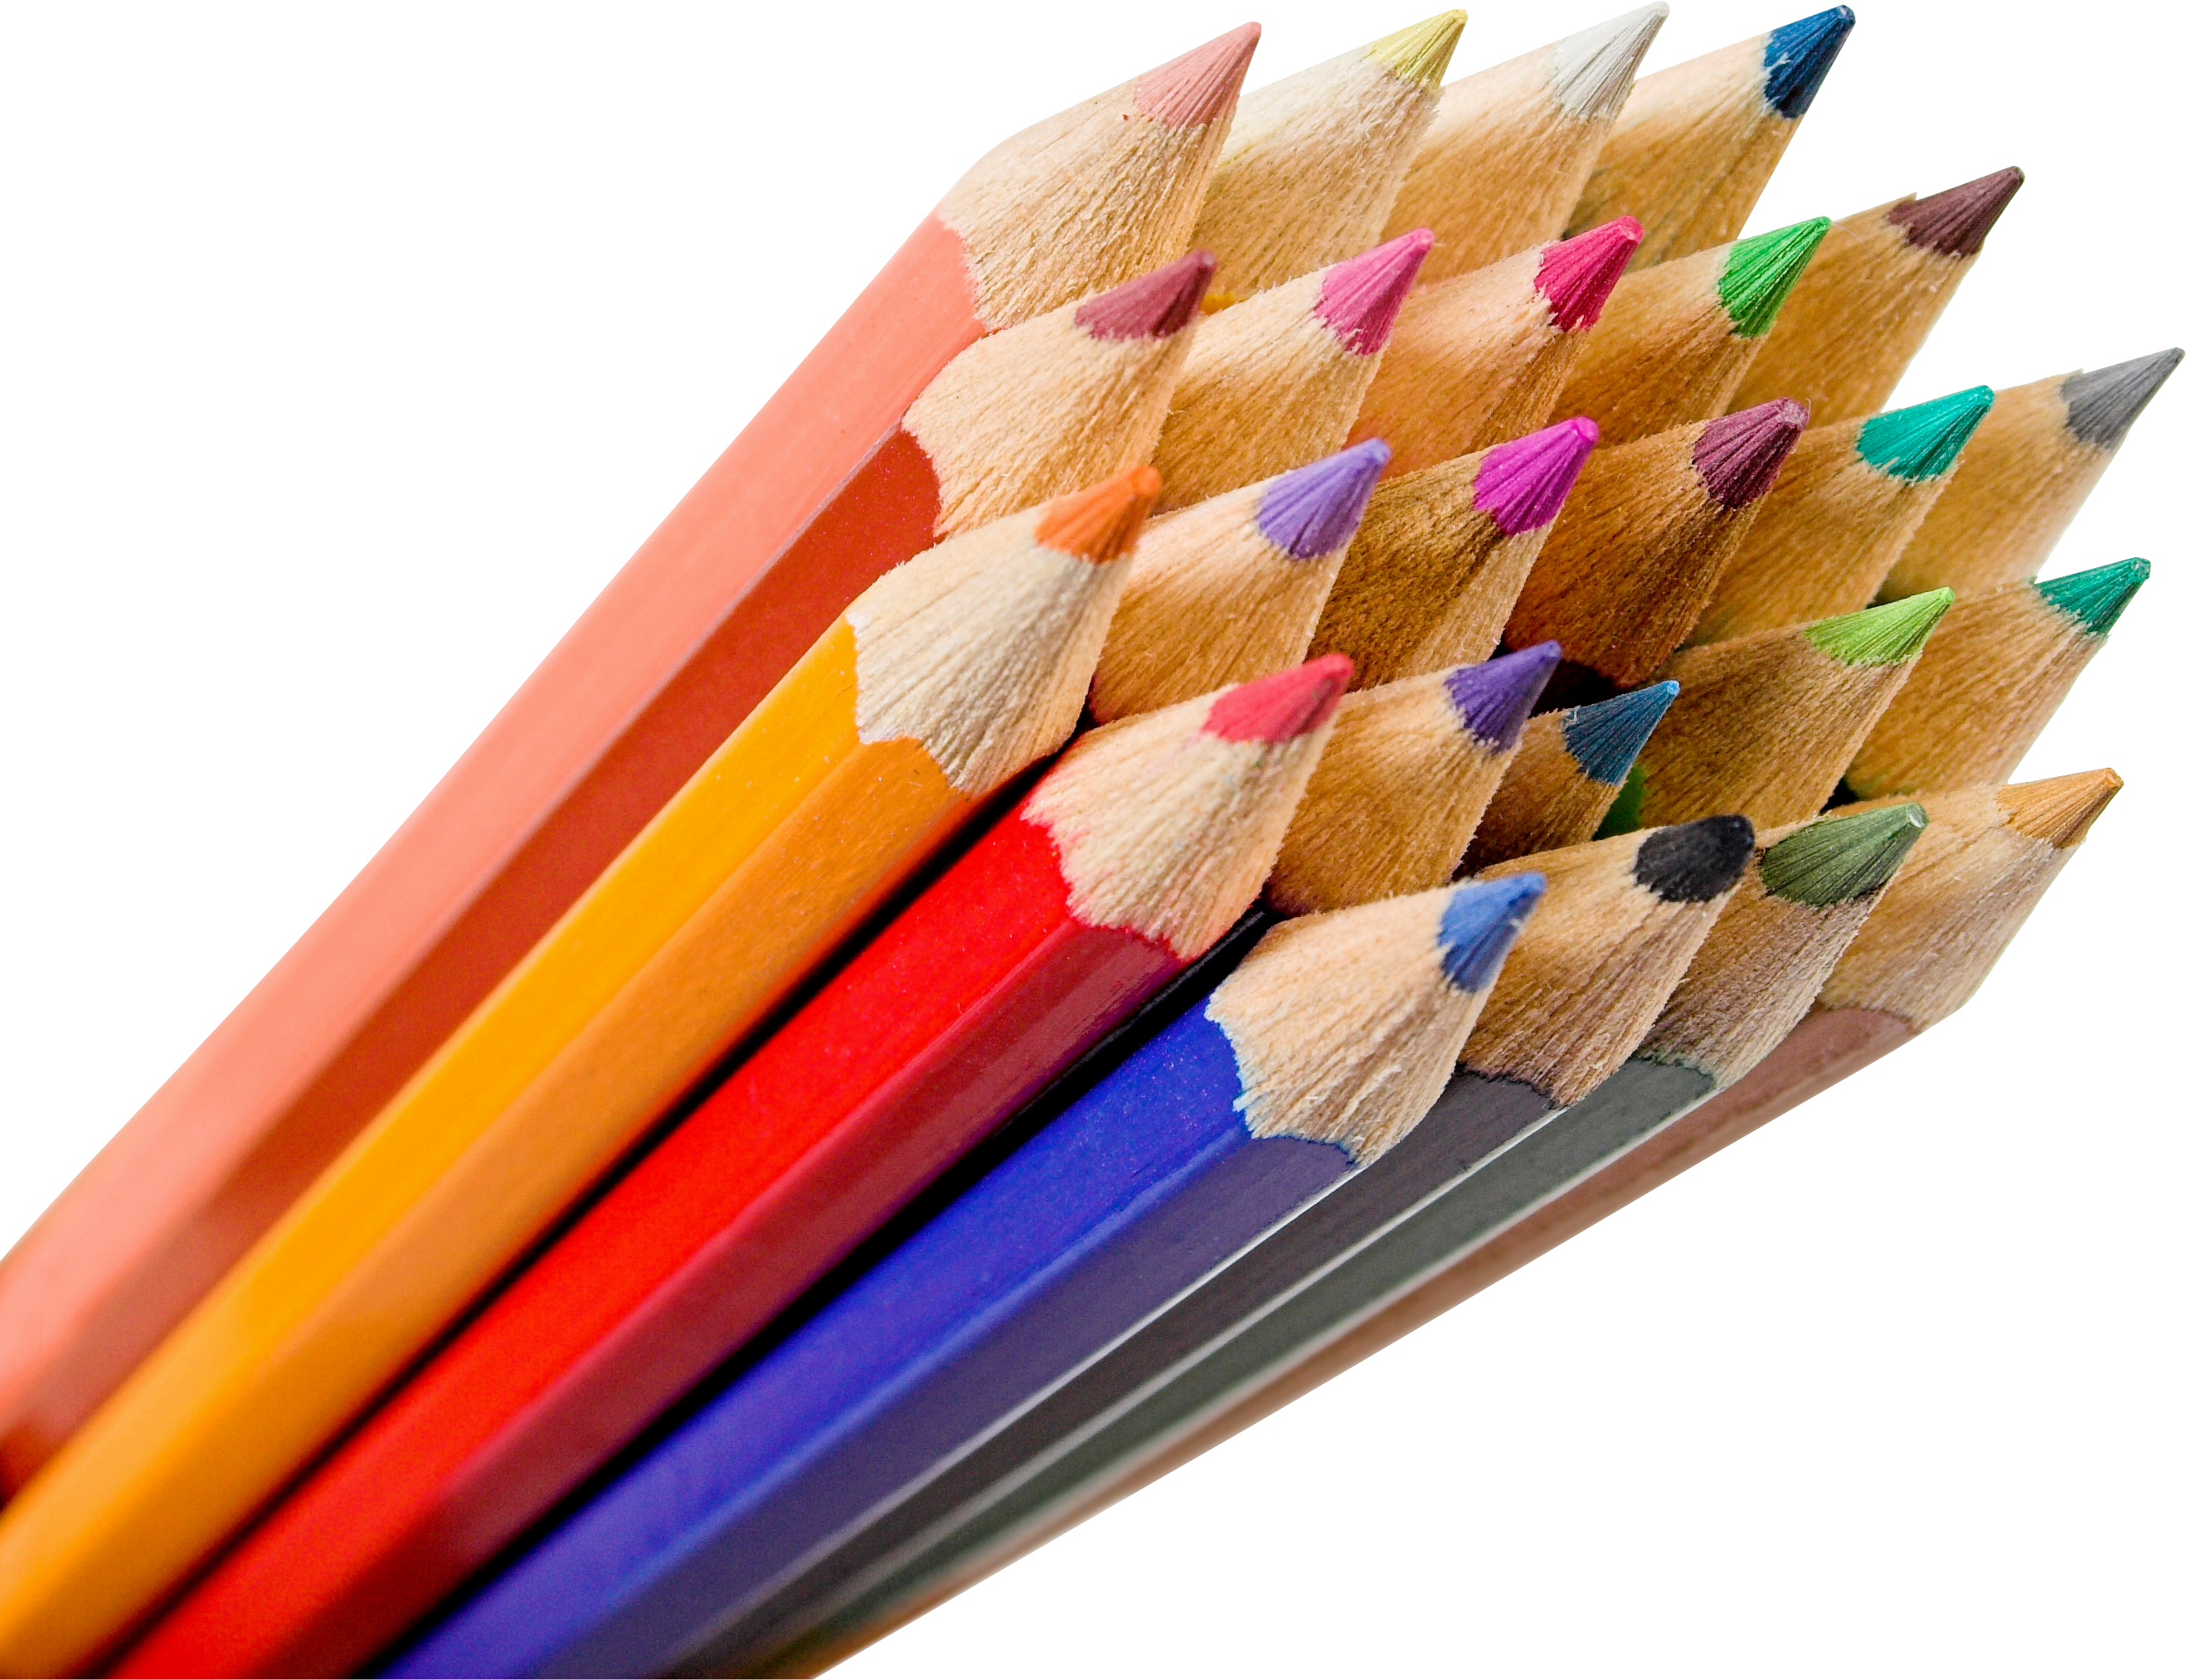 color pencils png